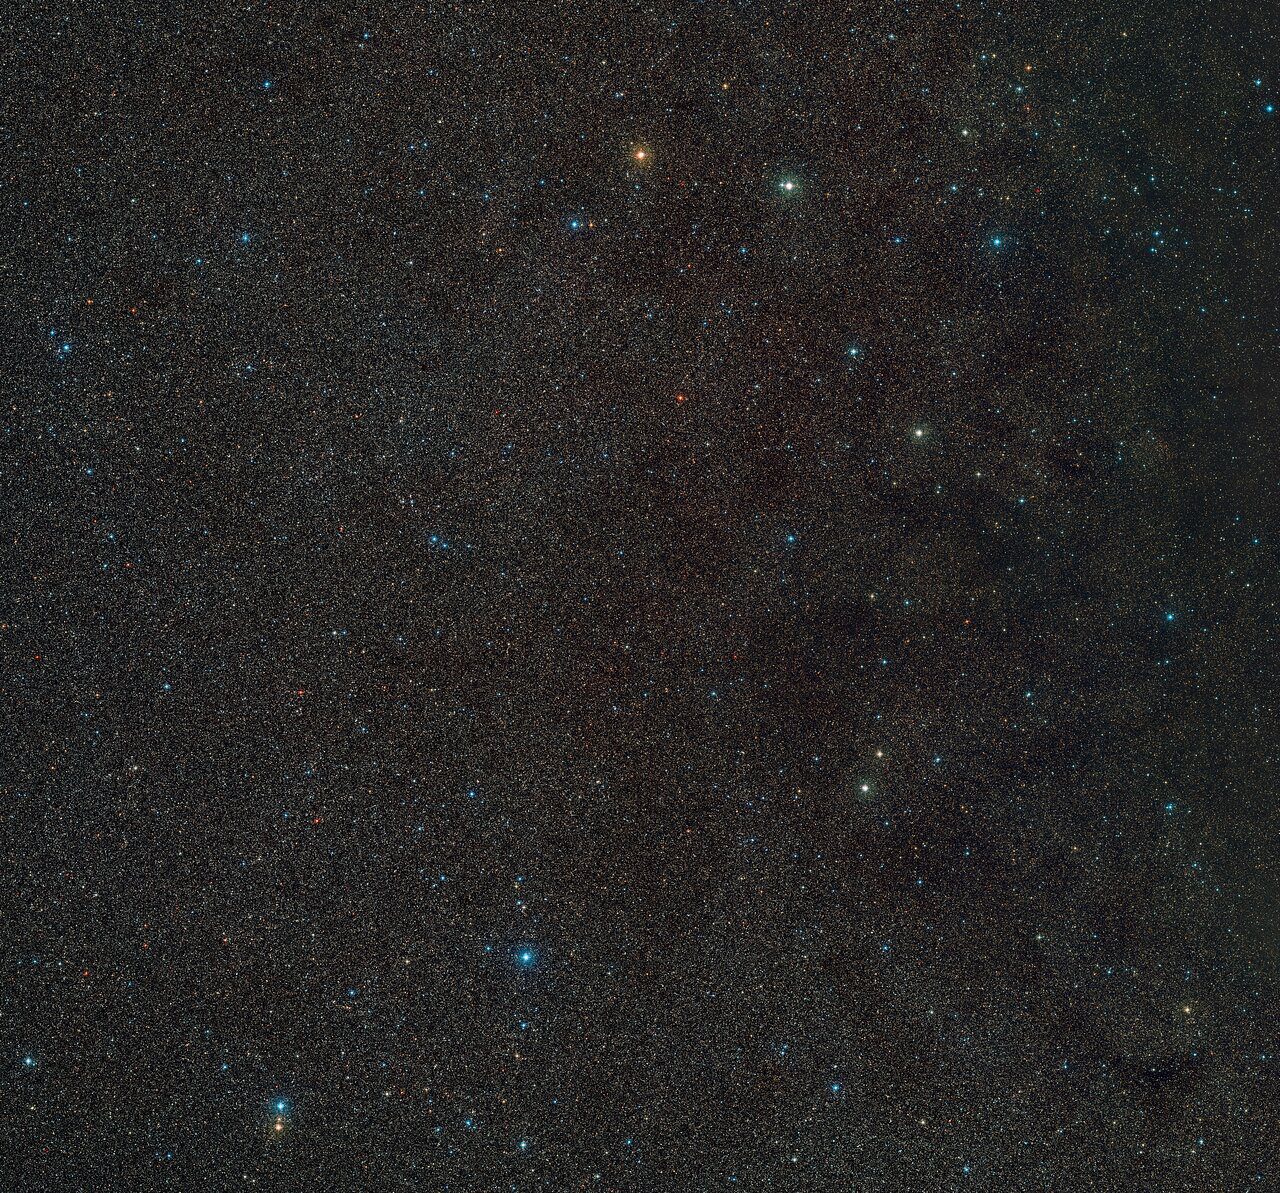 Uma imagem de um pedaço do espaço contendo centenas de estrelas distantes